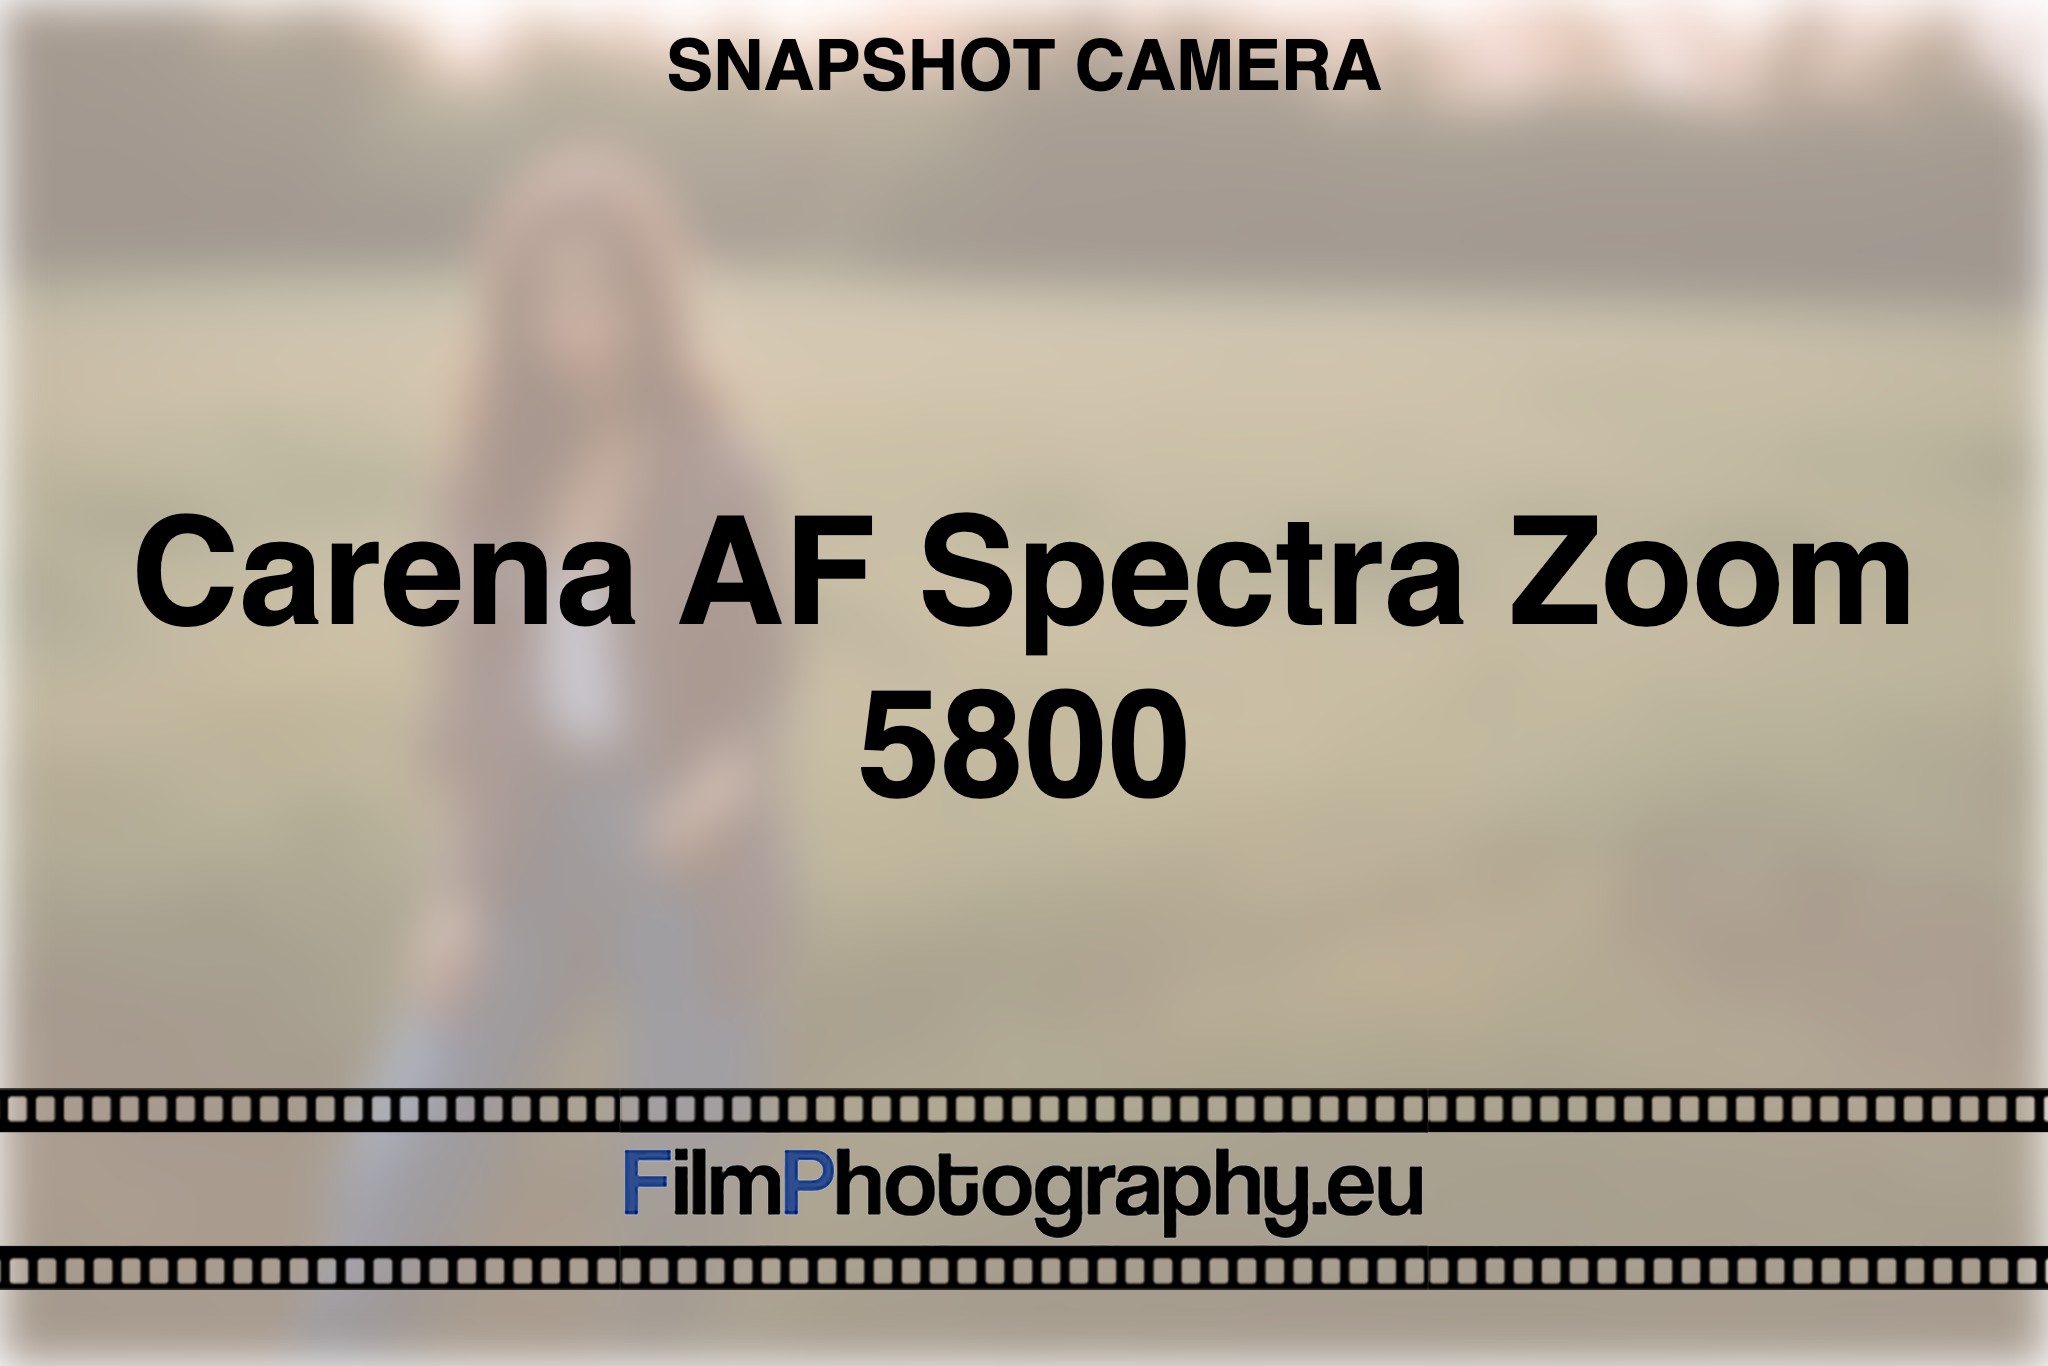 carena-af-spectra-zoom-5800-snapshot-camera-bnv